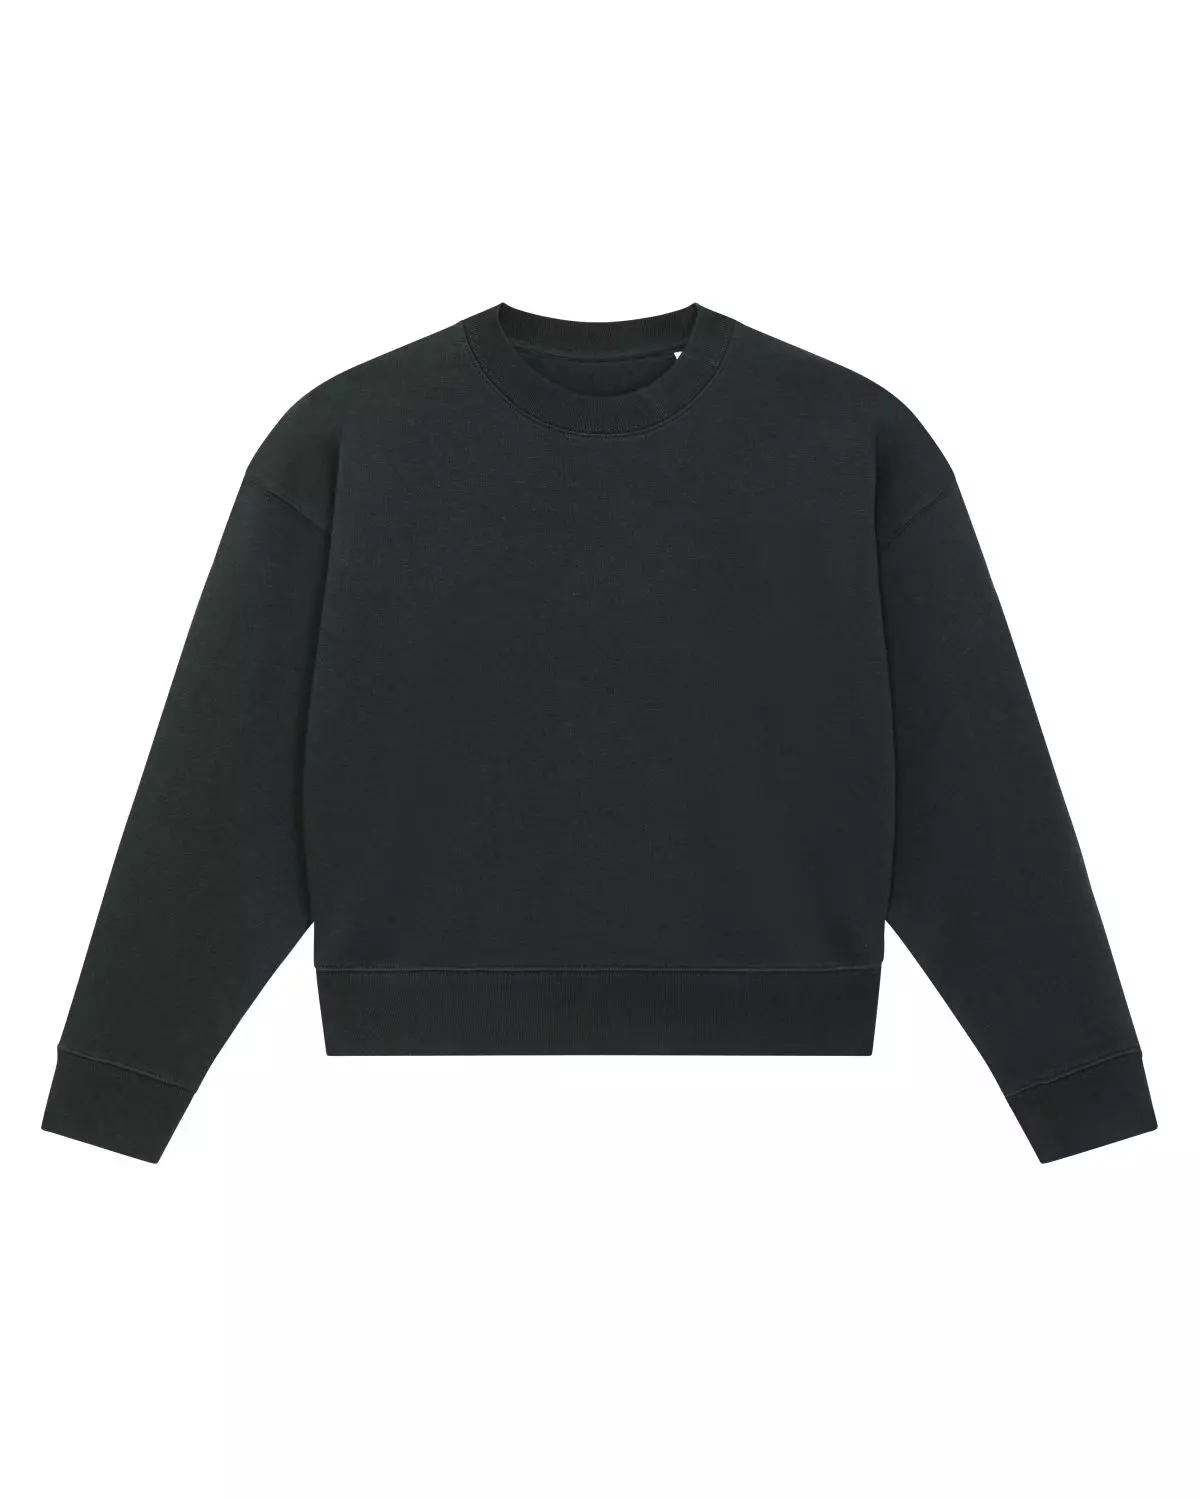 Sweater Crop